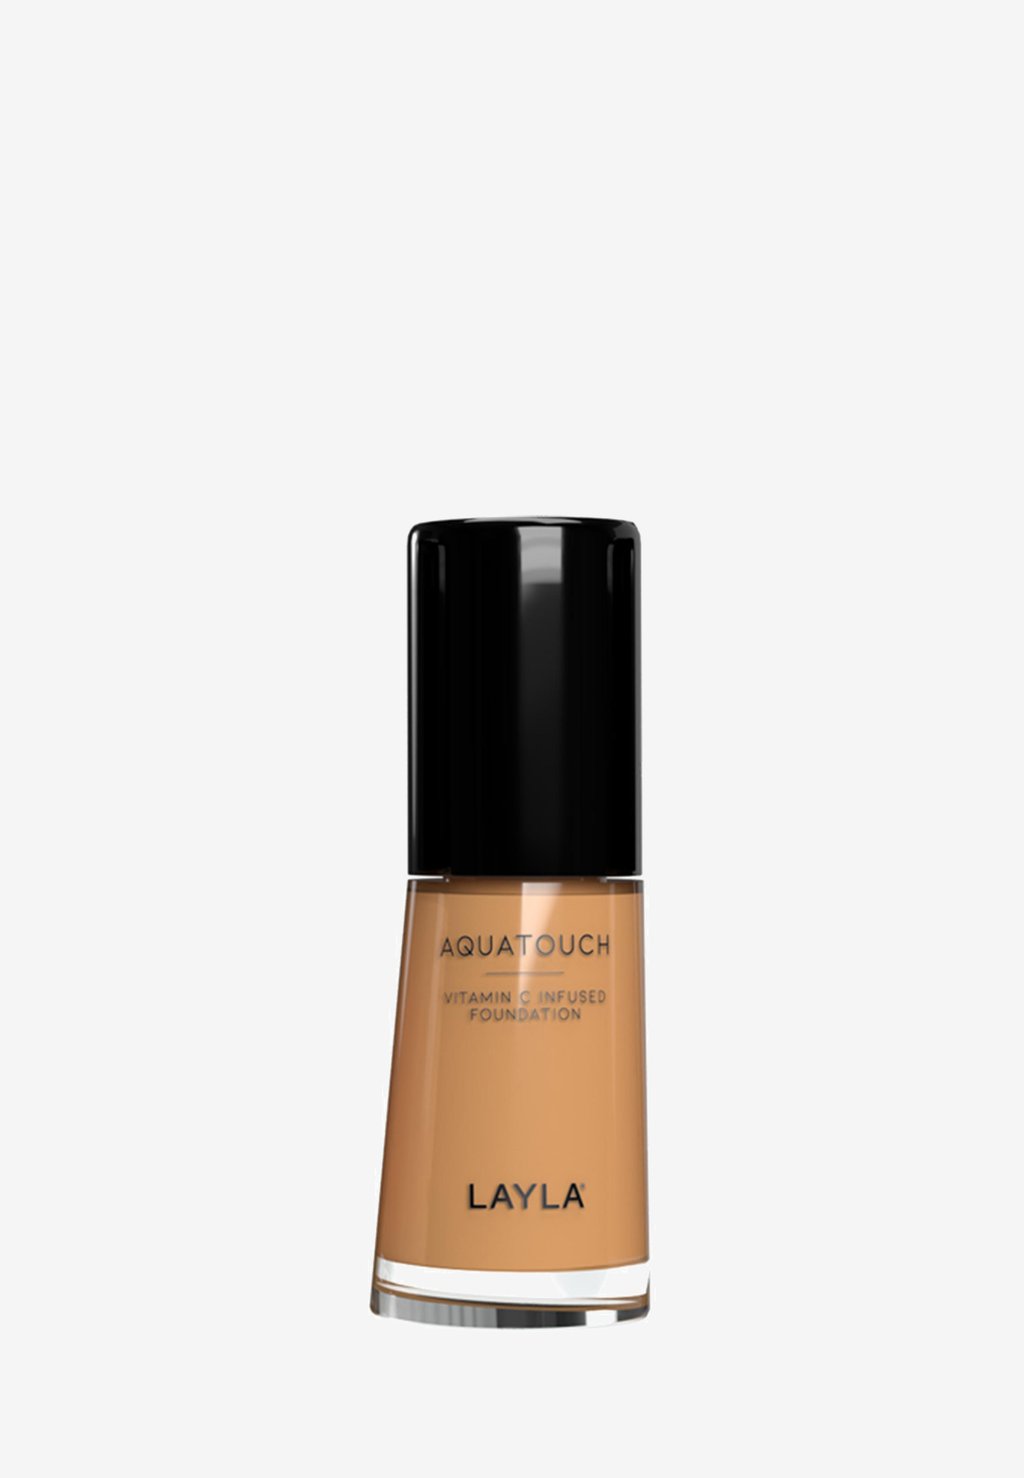 Тональная основа AQUATOUCH FOUNDATION Layla Cosmetics, цвет 5 увлажняющая тональная основа layla cosmetics aquatouch foundation 30 мл